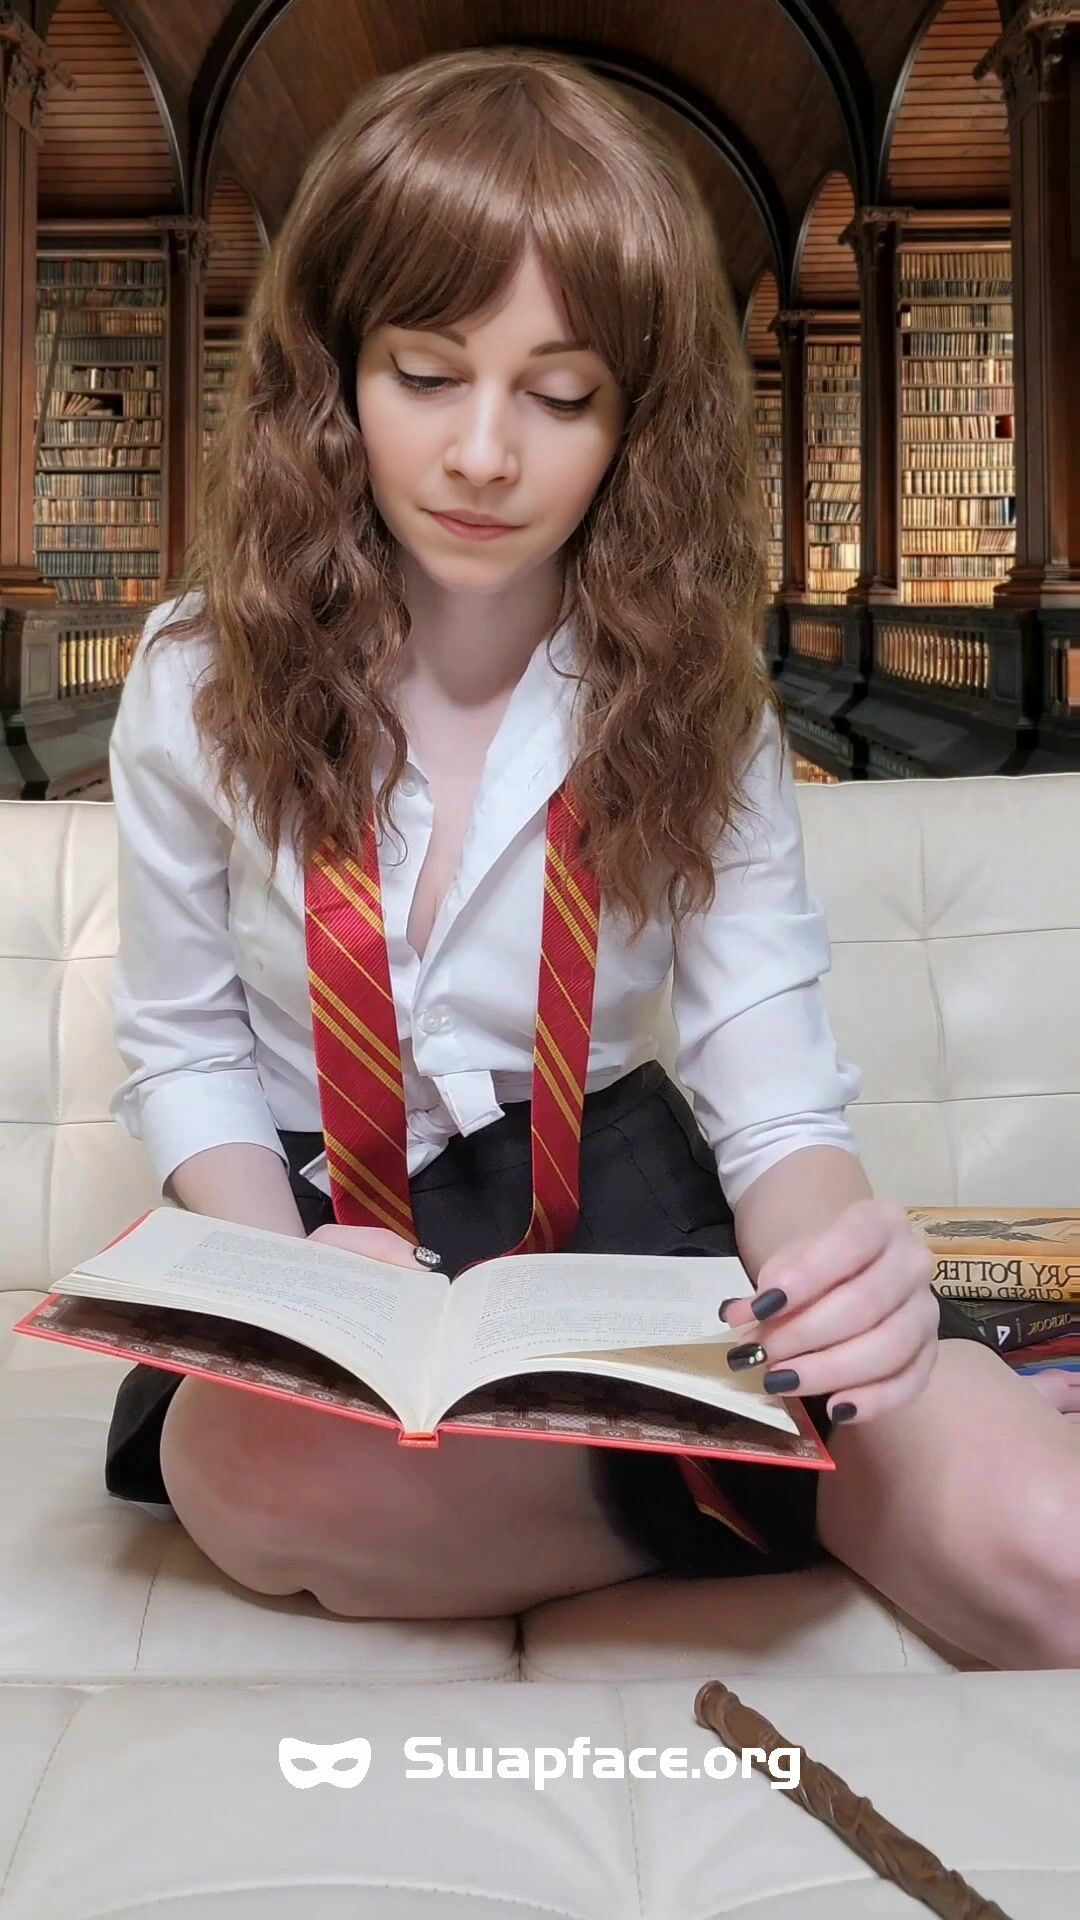 Emma Watson  roleplays as Hermione Granger